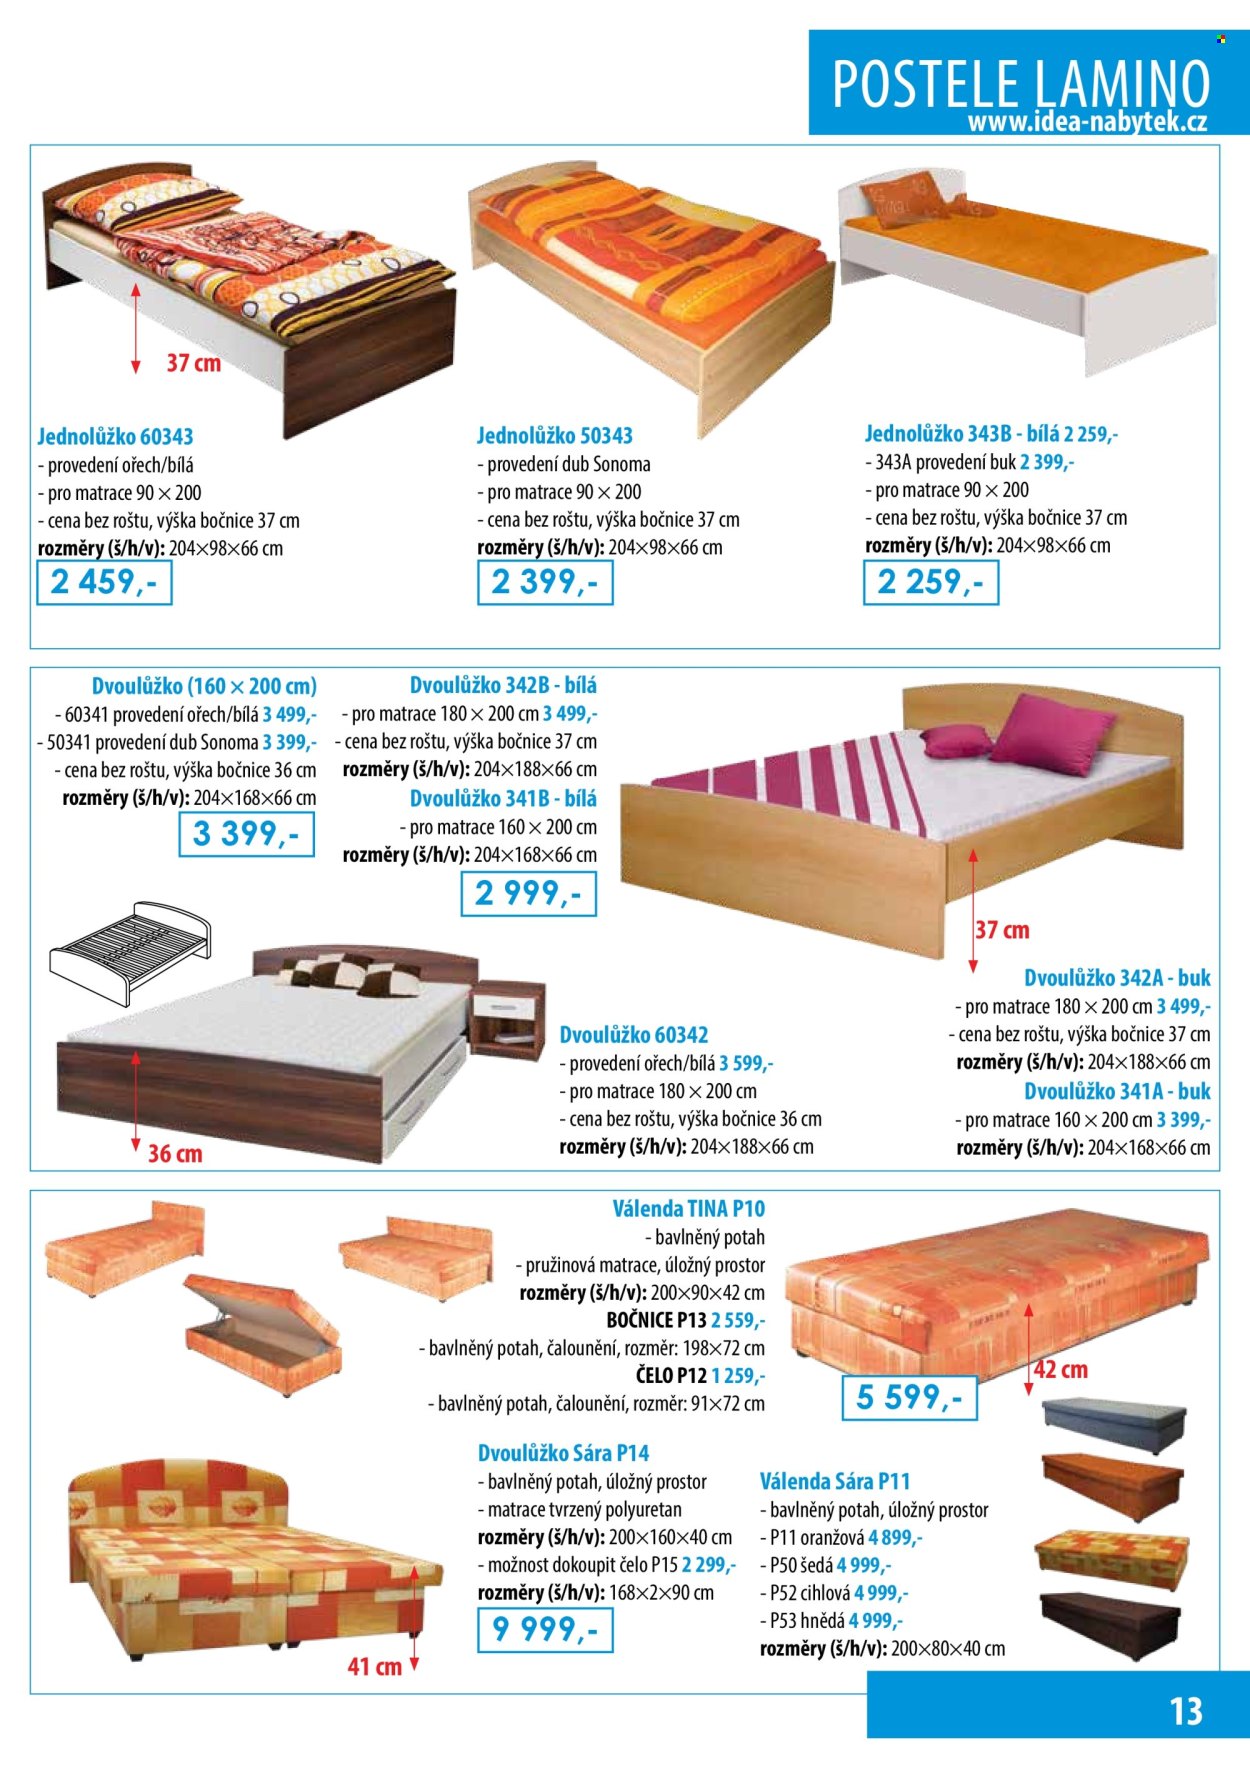 thumbnail - Leták IDEA nábytek - Produkty v akci - válenda, dvoulůžko, postel, matrace, pružinová matrace. Strana 13.